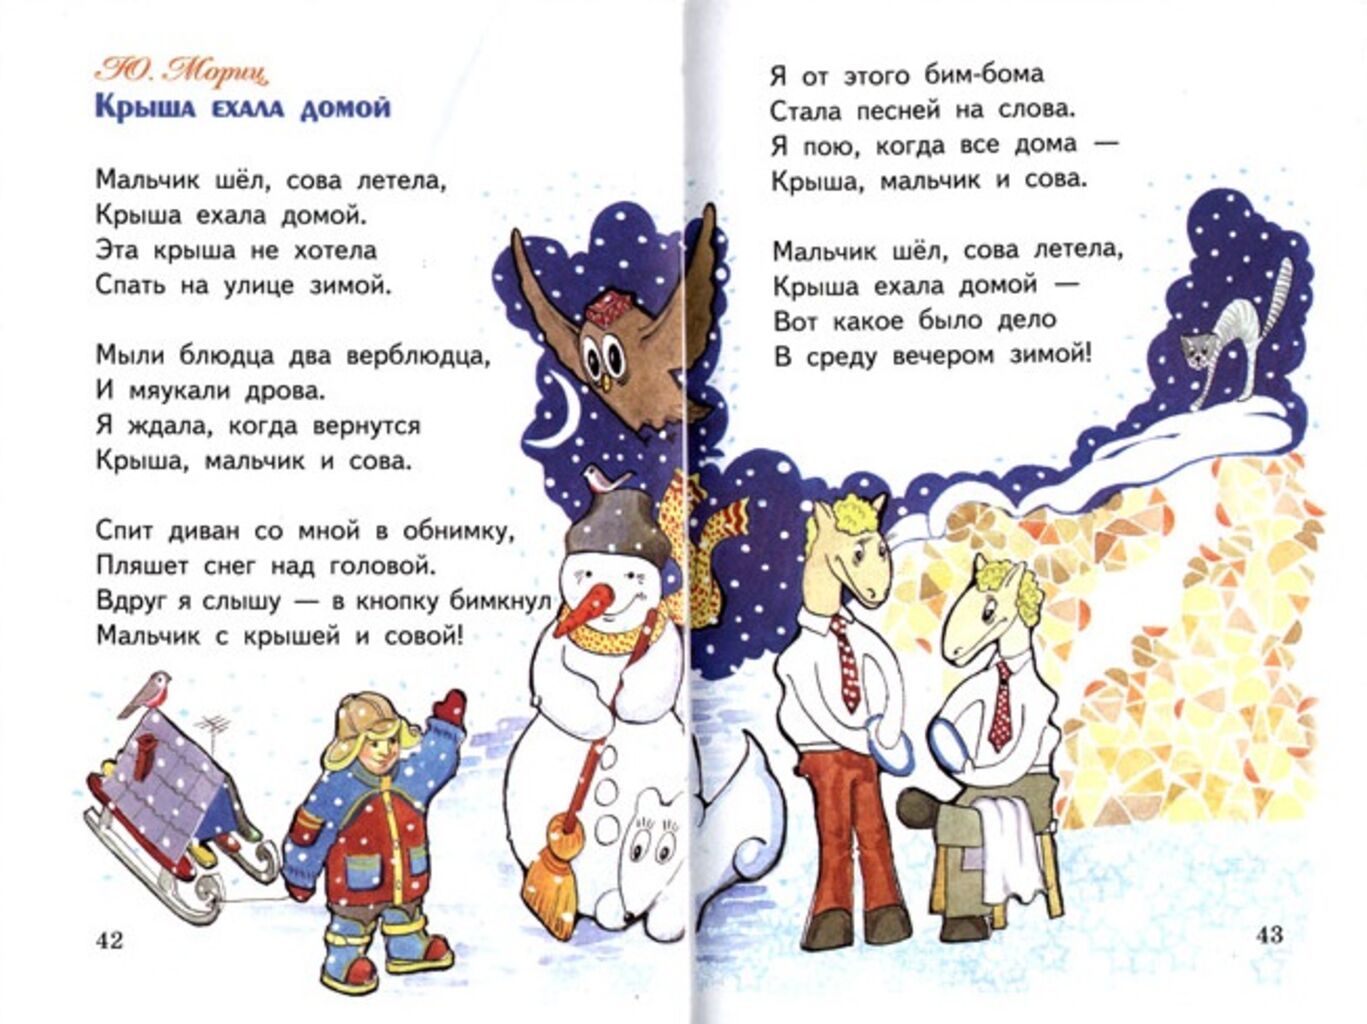 Стихотворение мальчику на конкурс. Юнна Мориц крыша ехала домой. Смешные стихи для детей. Смешные детские стихи. Смешные стихотг для детей.